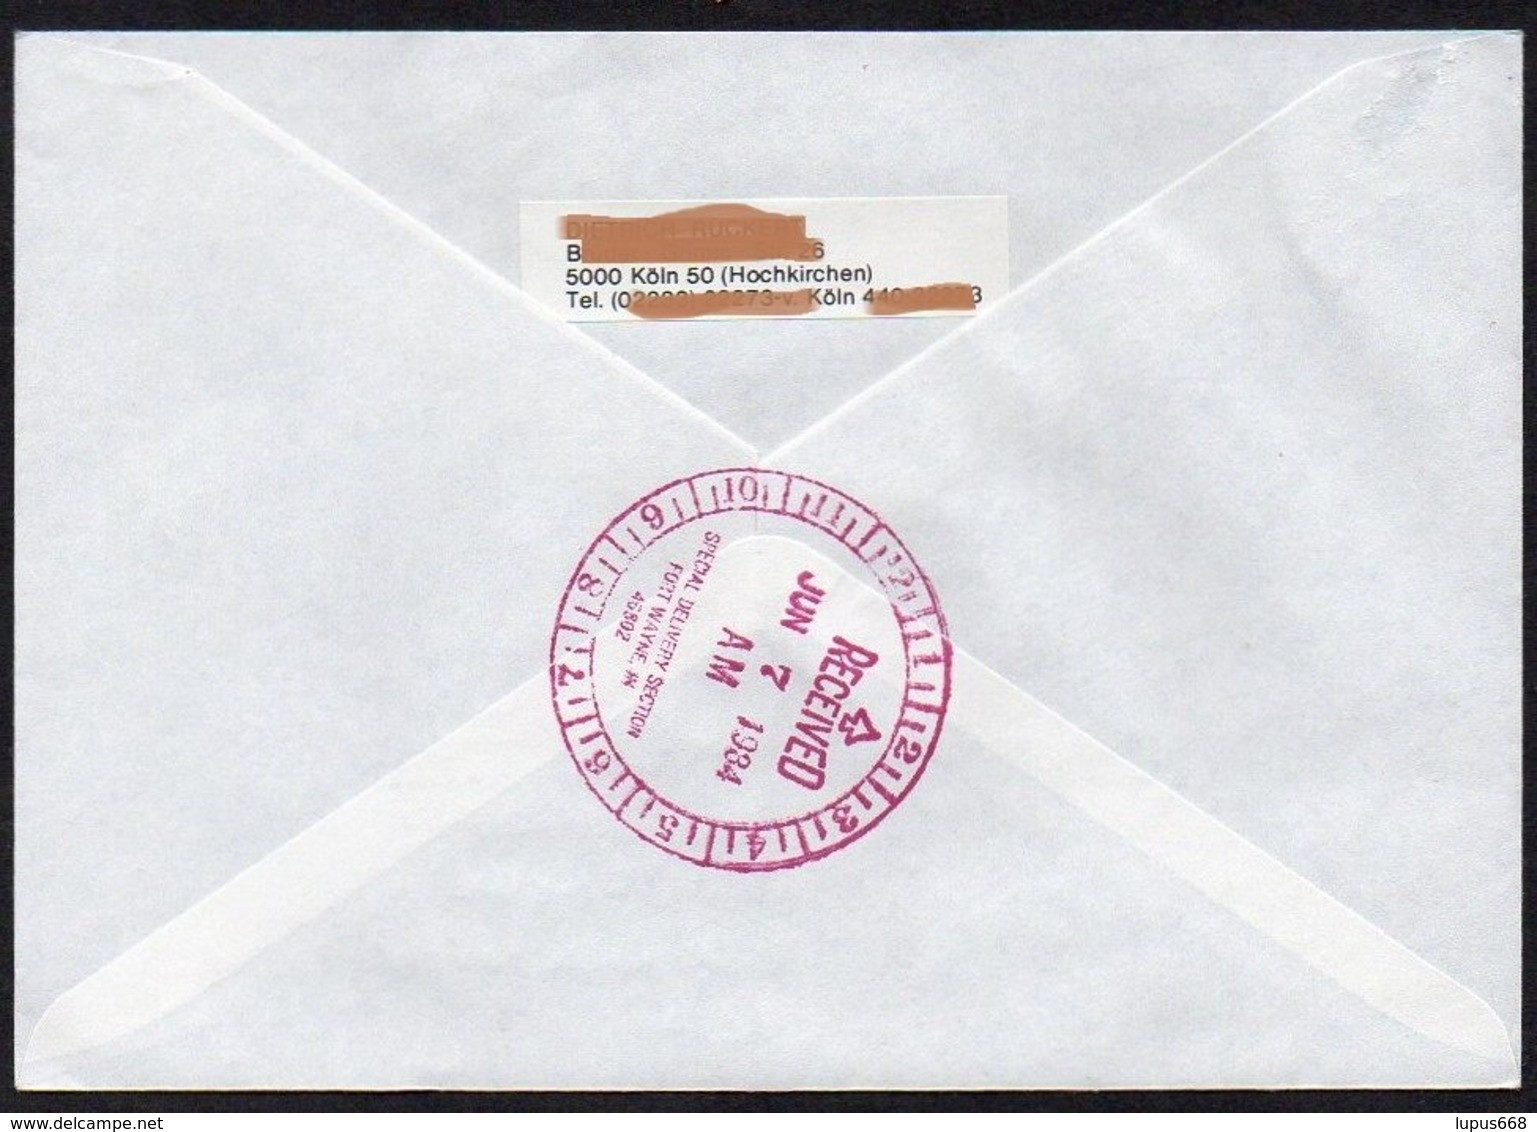 UNO - Wien  1984  MiNr. 44 (2)  Auf Express - Brief In Die U.S.A  ,  FDC; Eine Zukunft Für Flüchtlinge - Briefe U. Dokumente